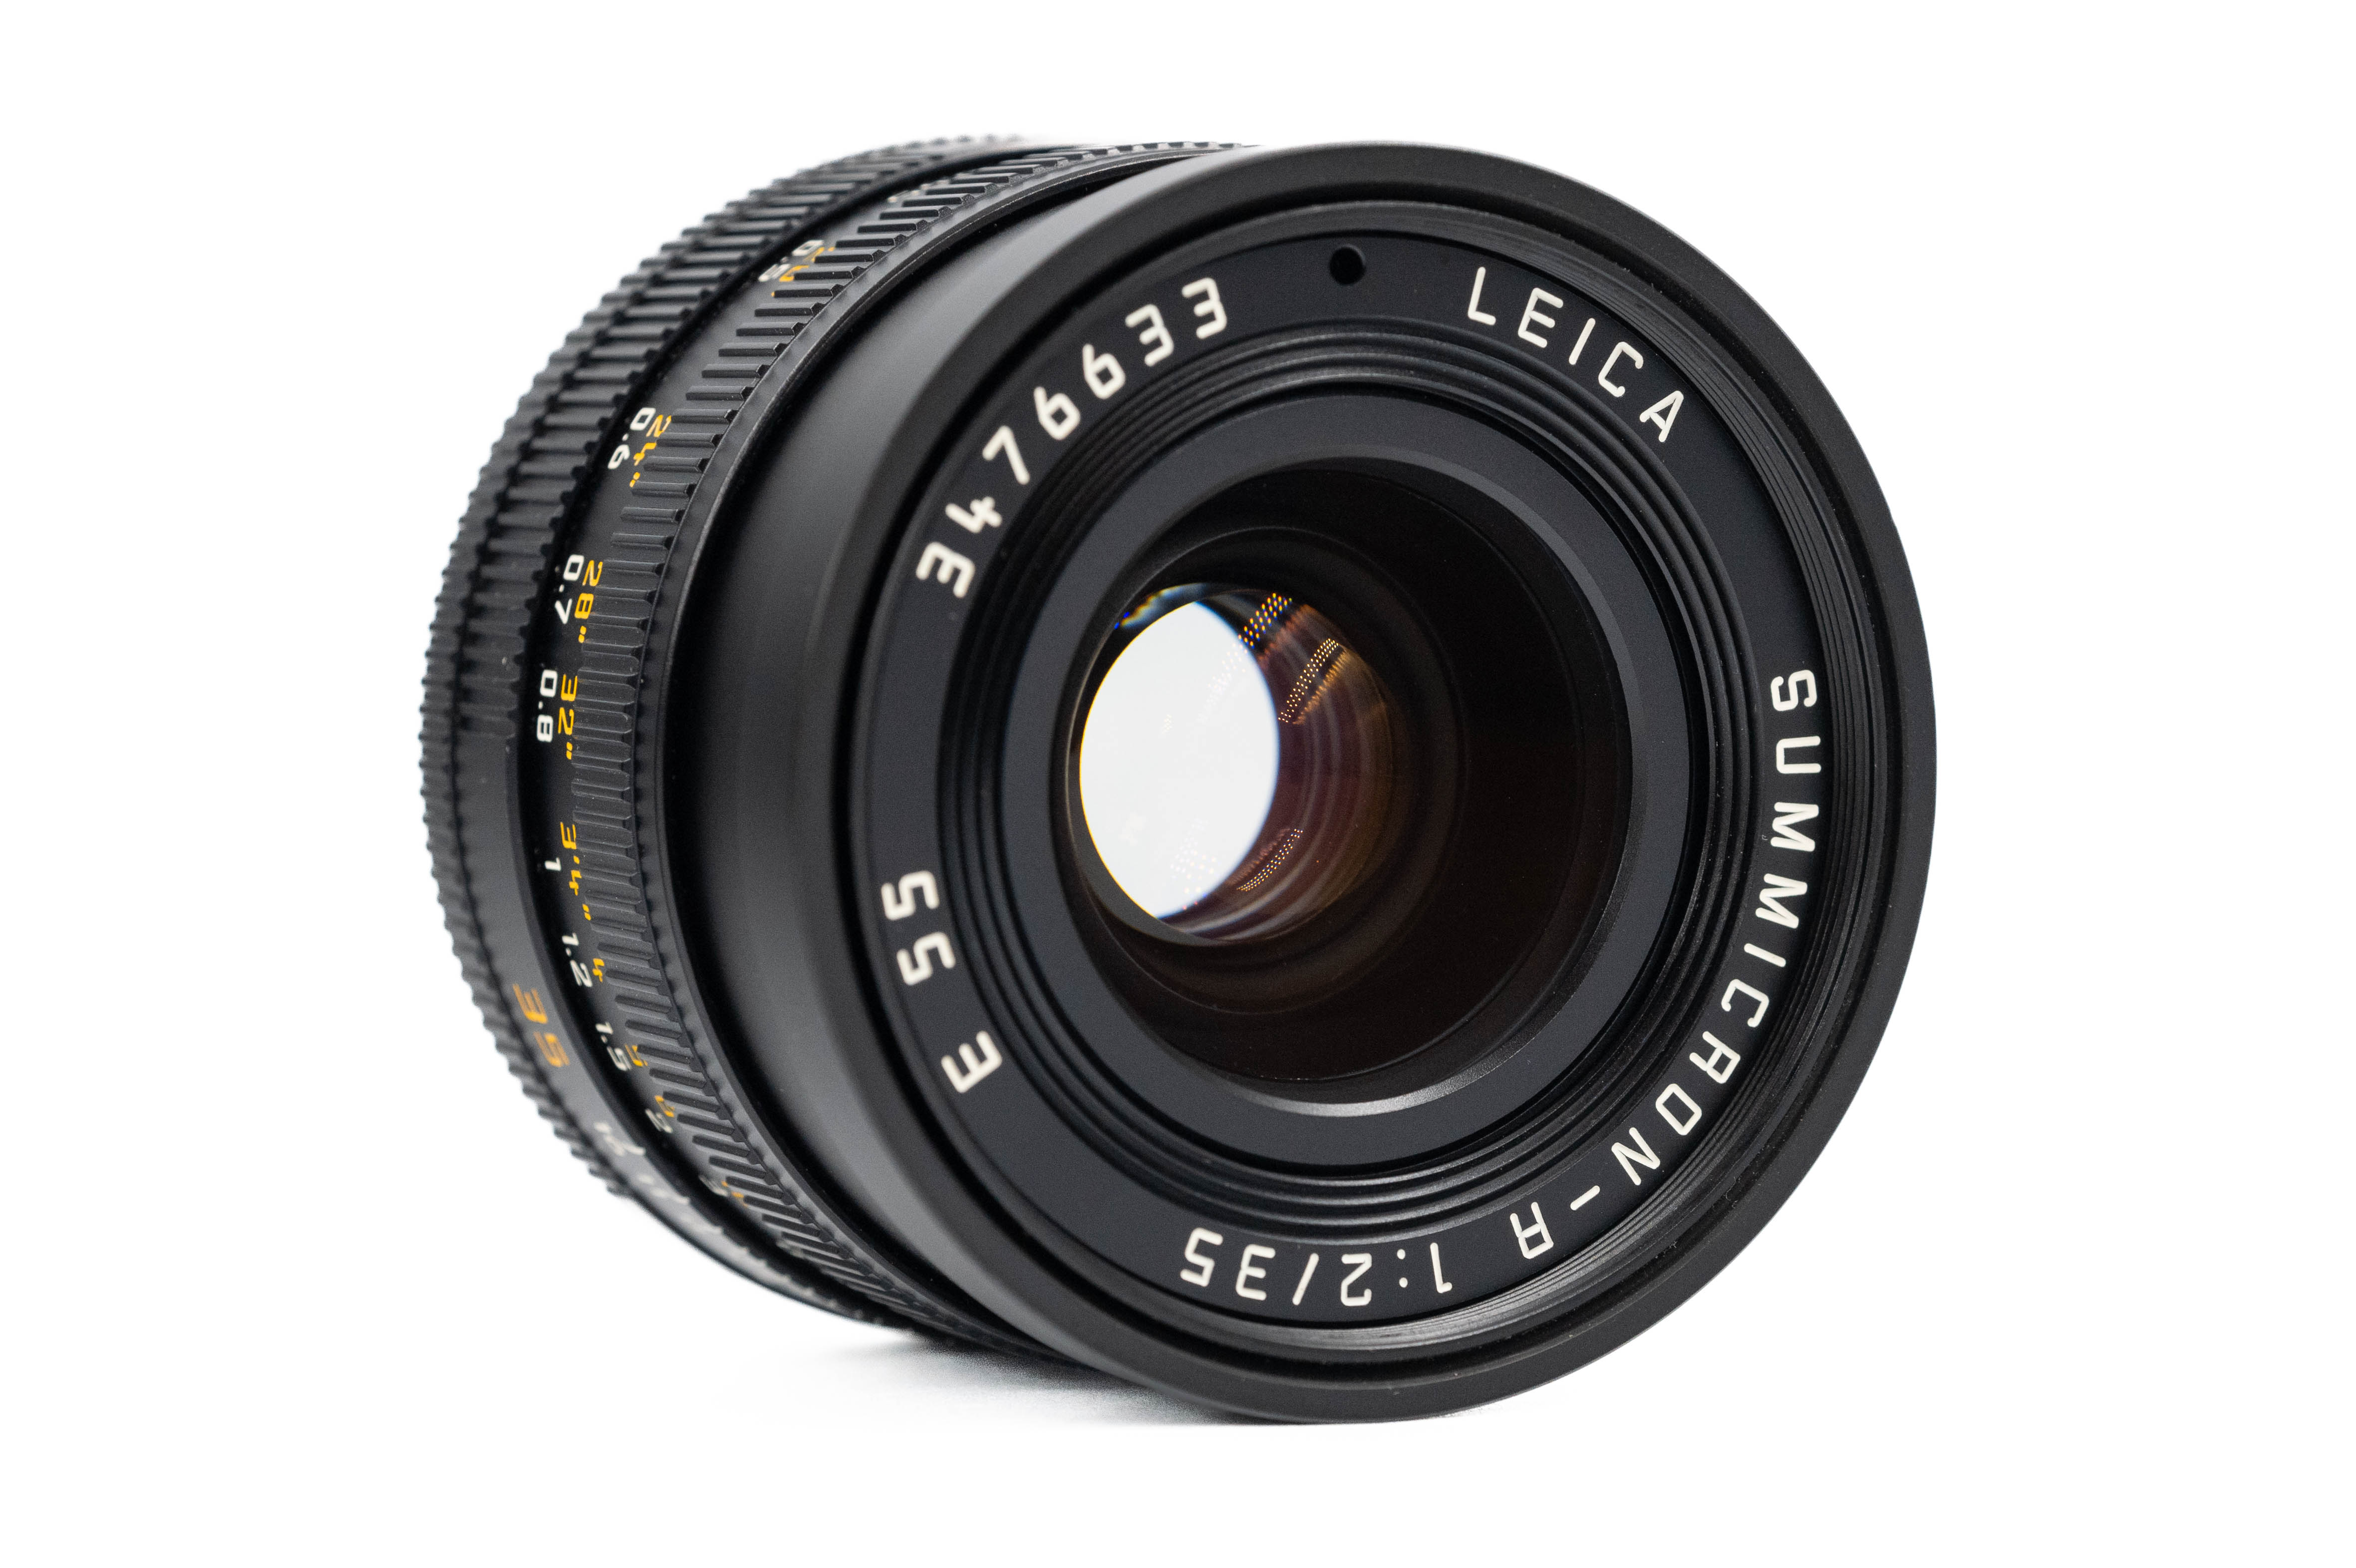 Leica Summicron-R 35mm f/2 V2 3 Cam 11115